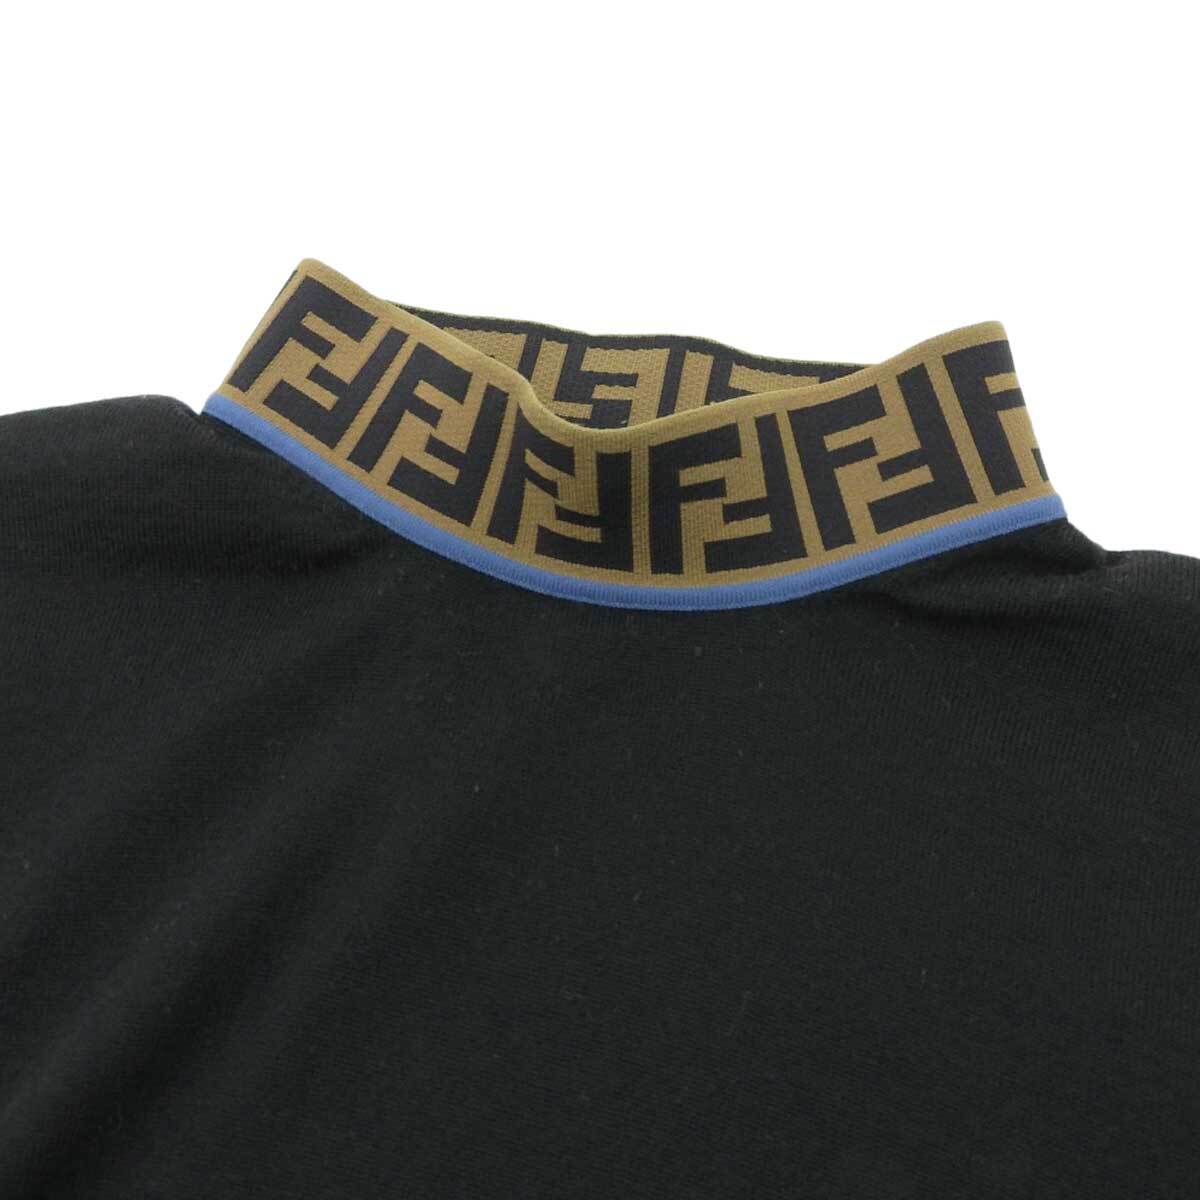  Fendi Zucca рисунок Logo с высоким воротником вязаный свитер FZZ411 A4GC мужской черный FENDI б/у [ одежда * мелкие вещи ]